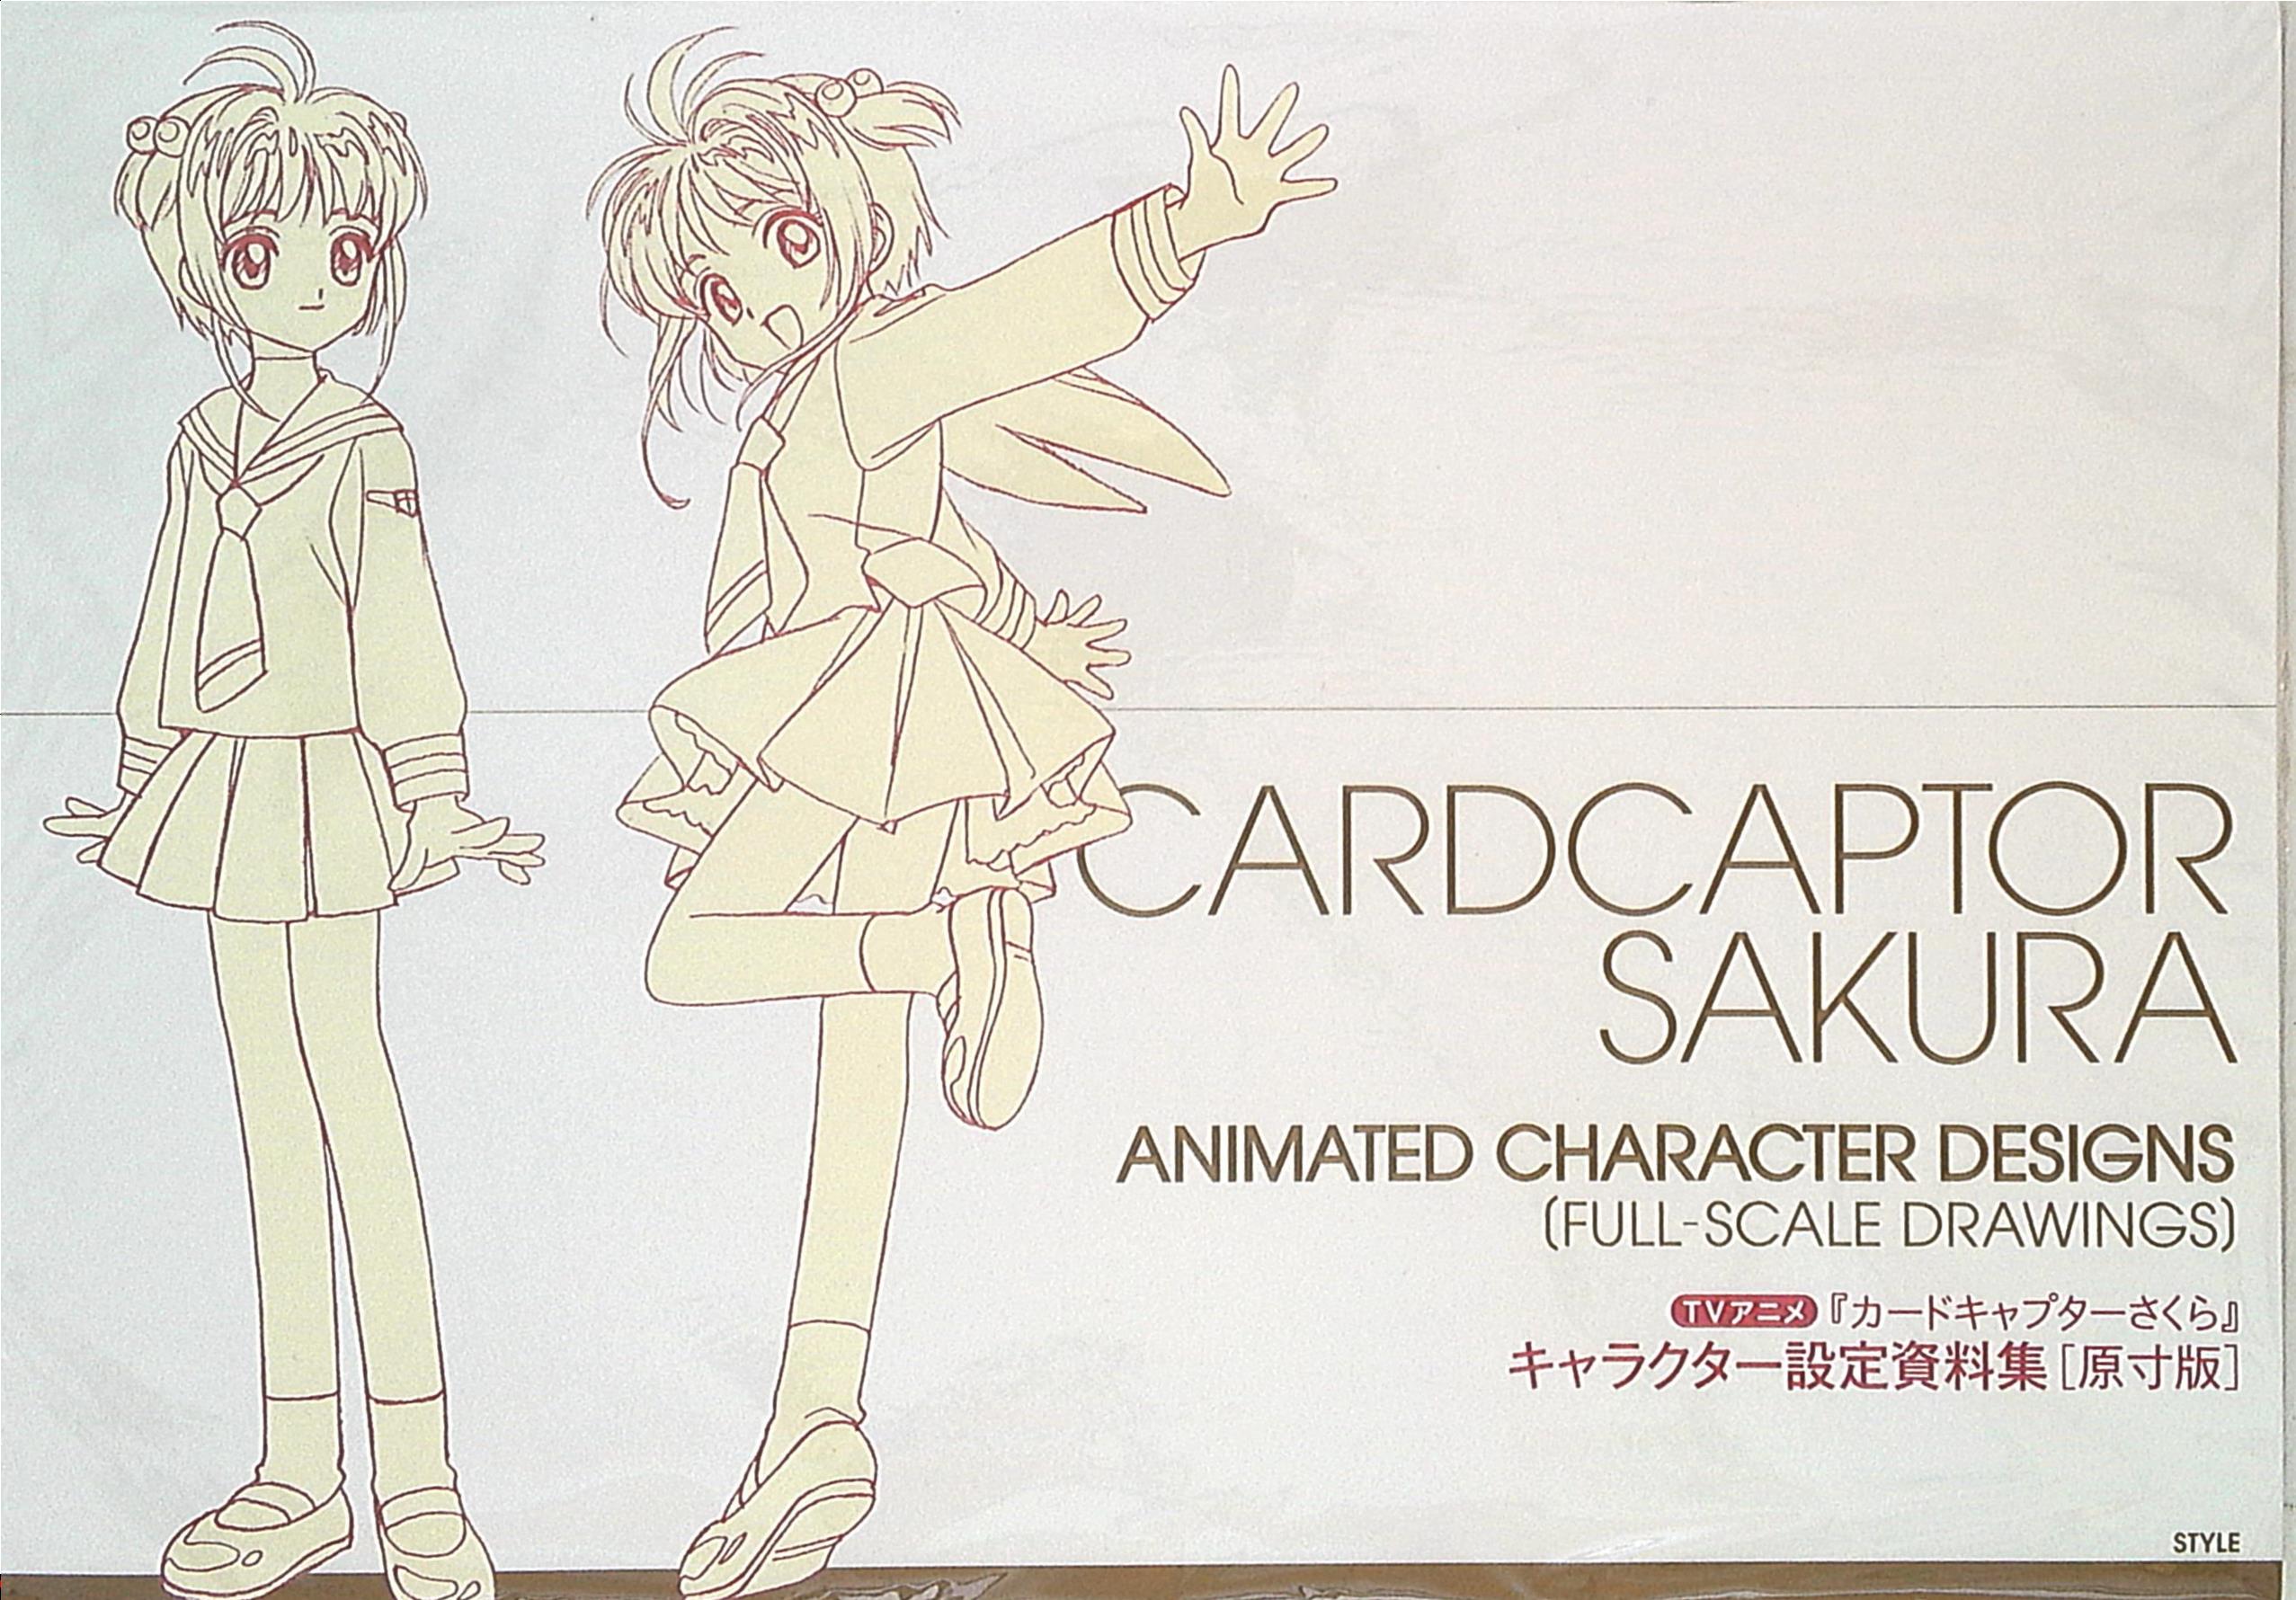 アニメスタイル キャラ Tvアニメ カードキャプターさくら キャラクター設定資料集原寸版 本イタミあり まんだらけ Mandarake